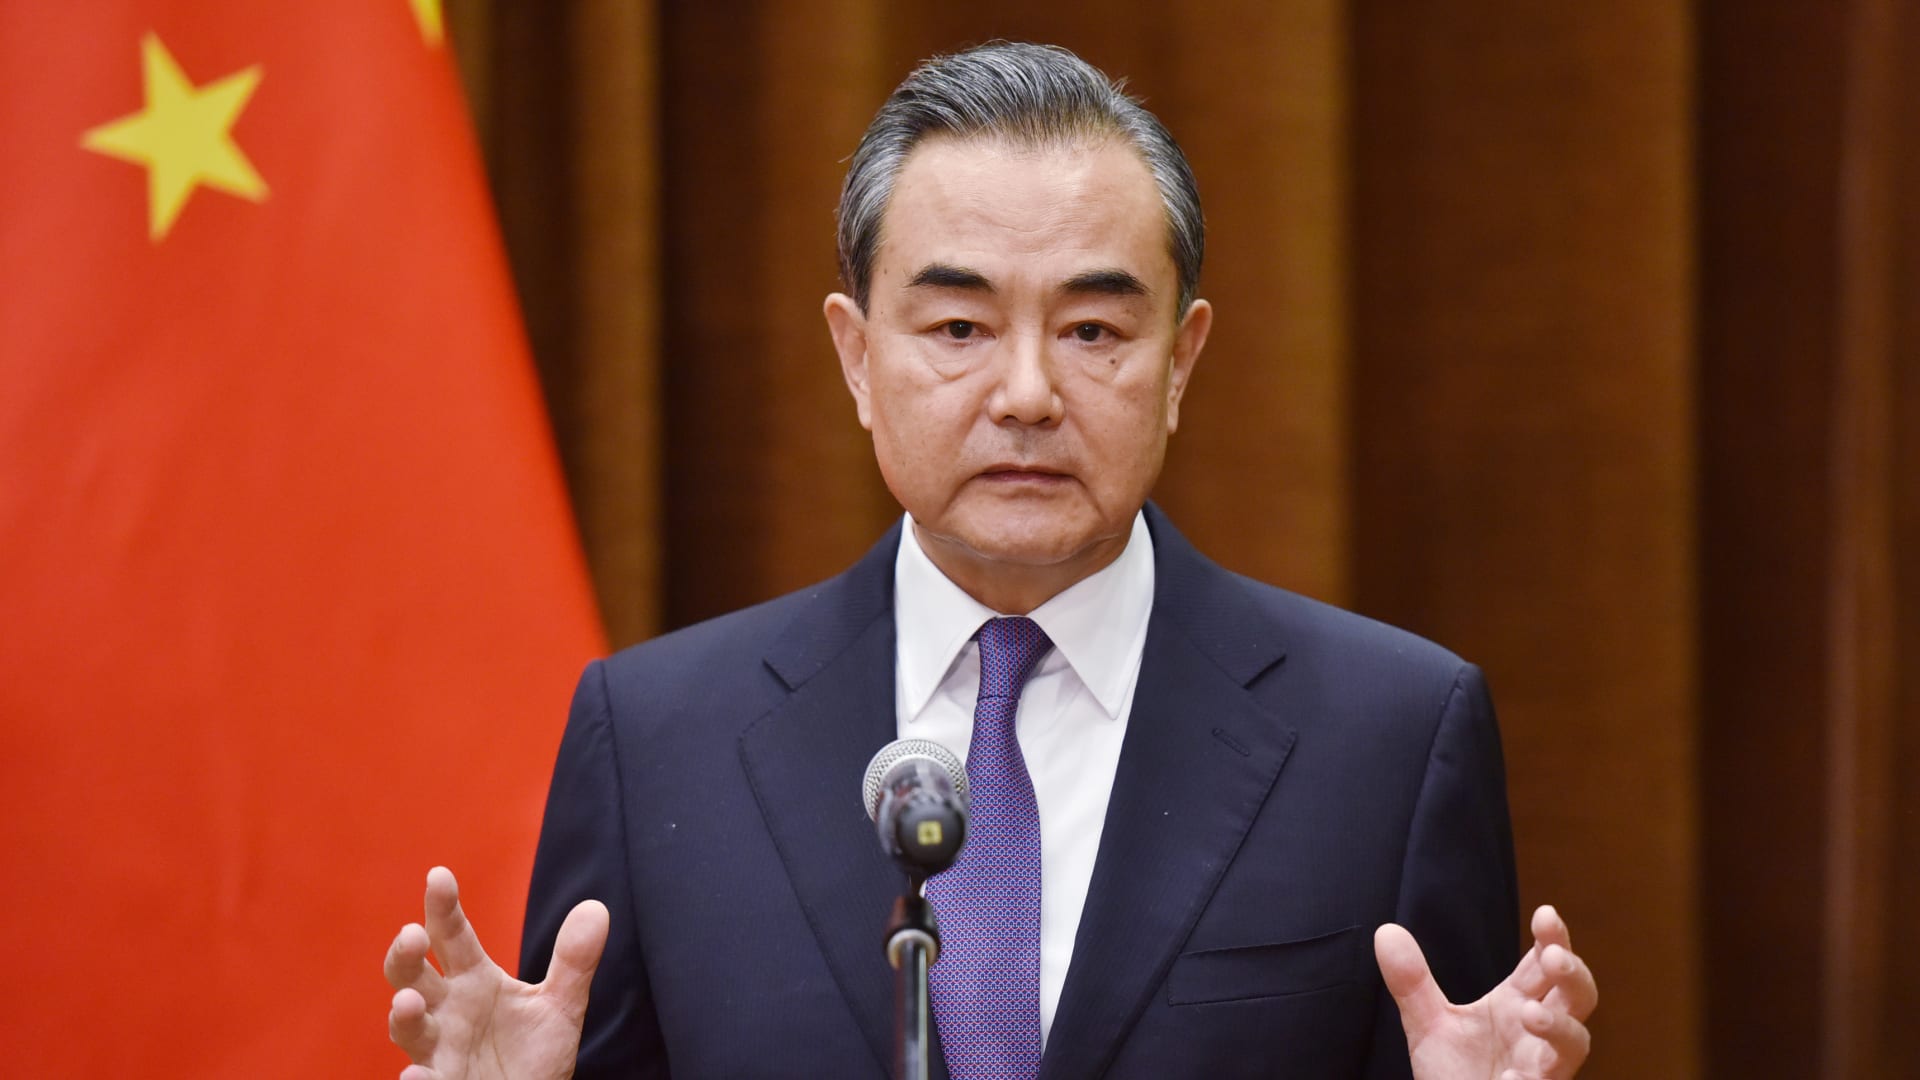 الصين تدعو أمريكا إلى وقف "سياسة الاحتواء" و"البلطجة أحادية الجانب"